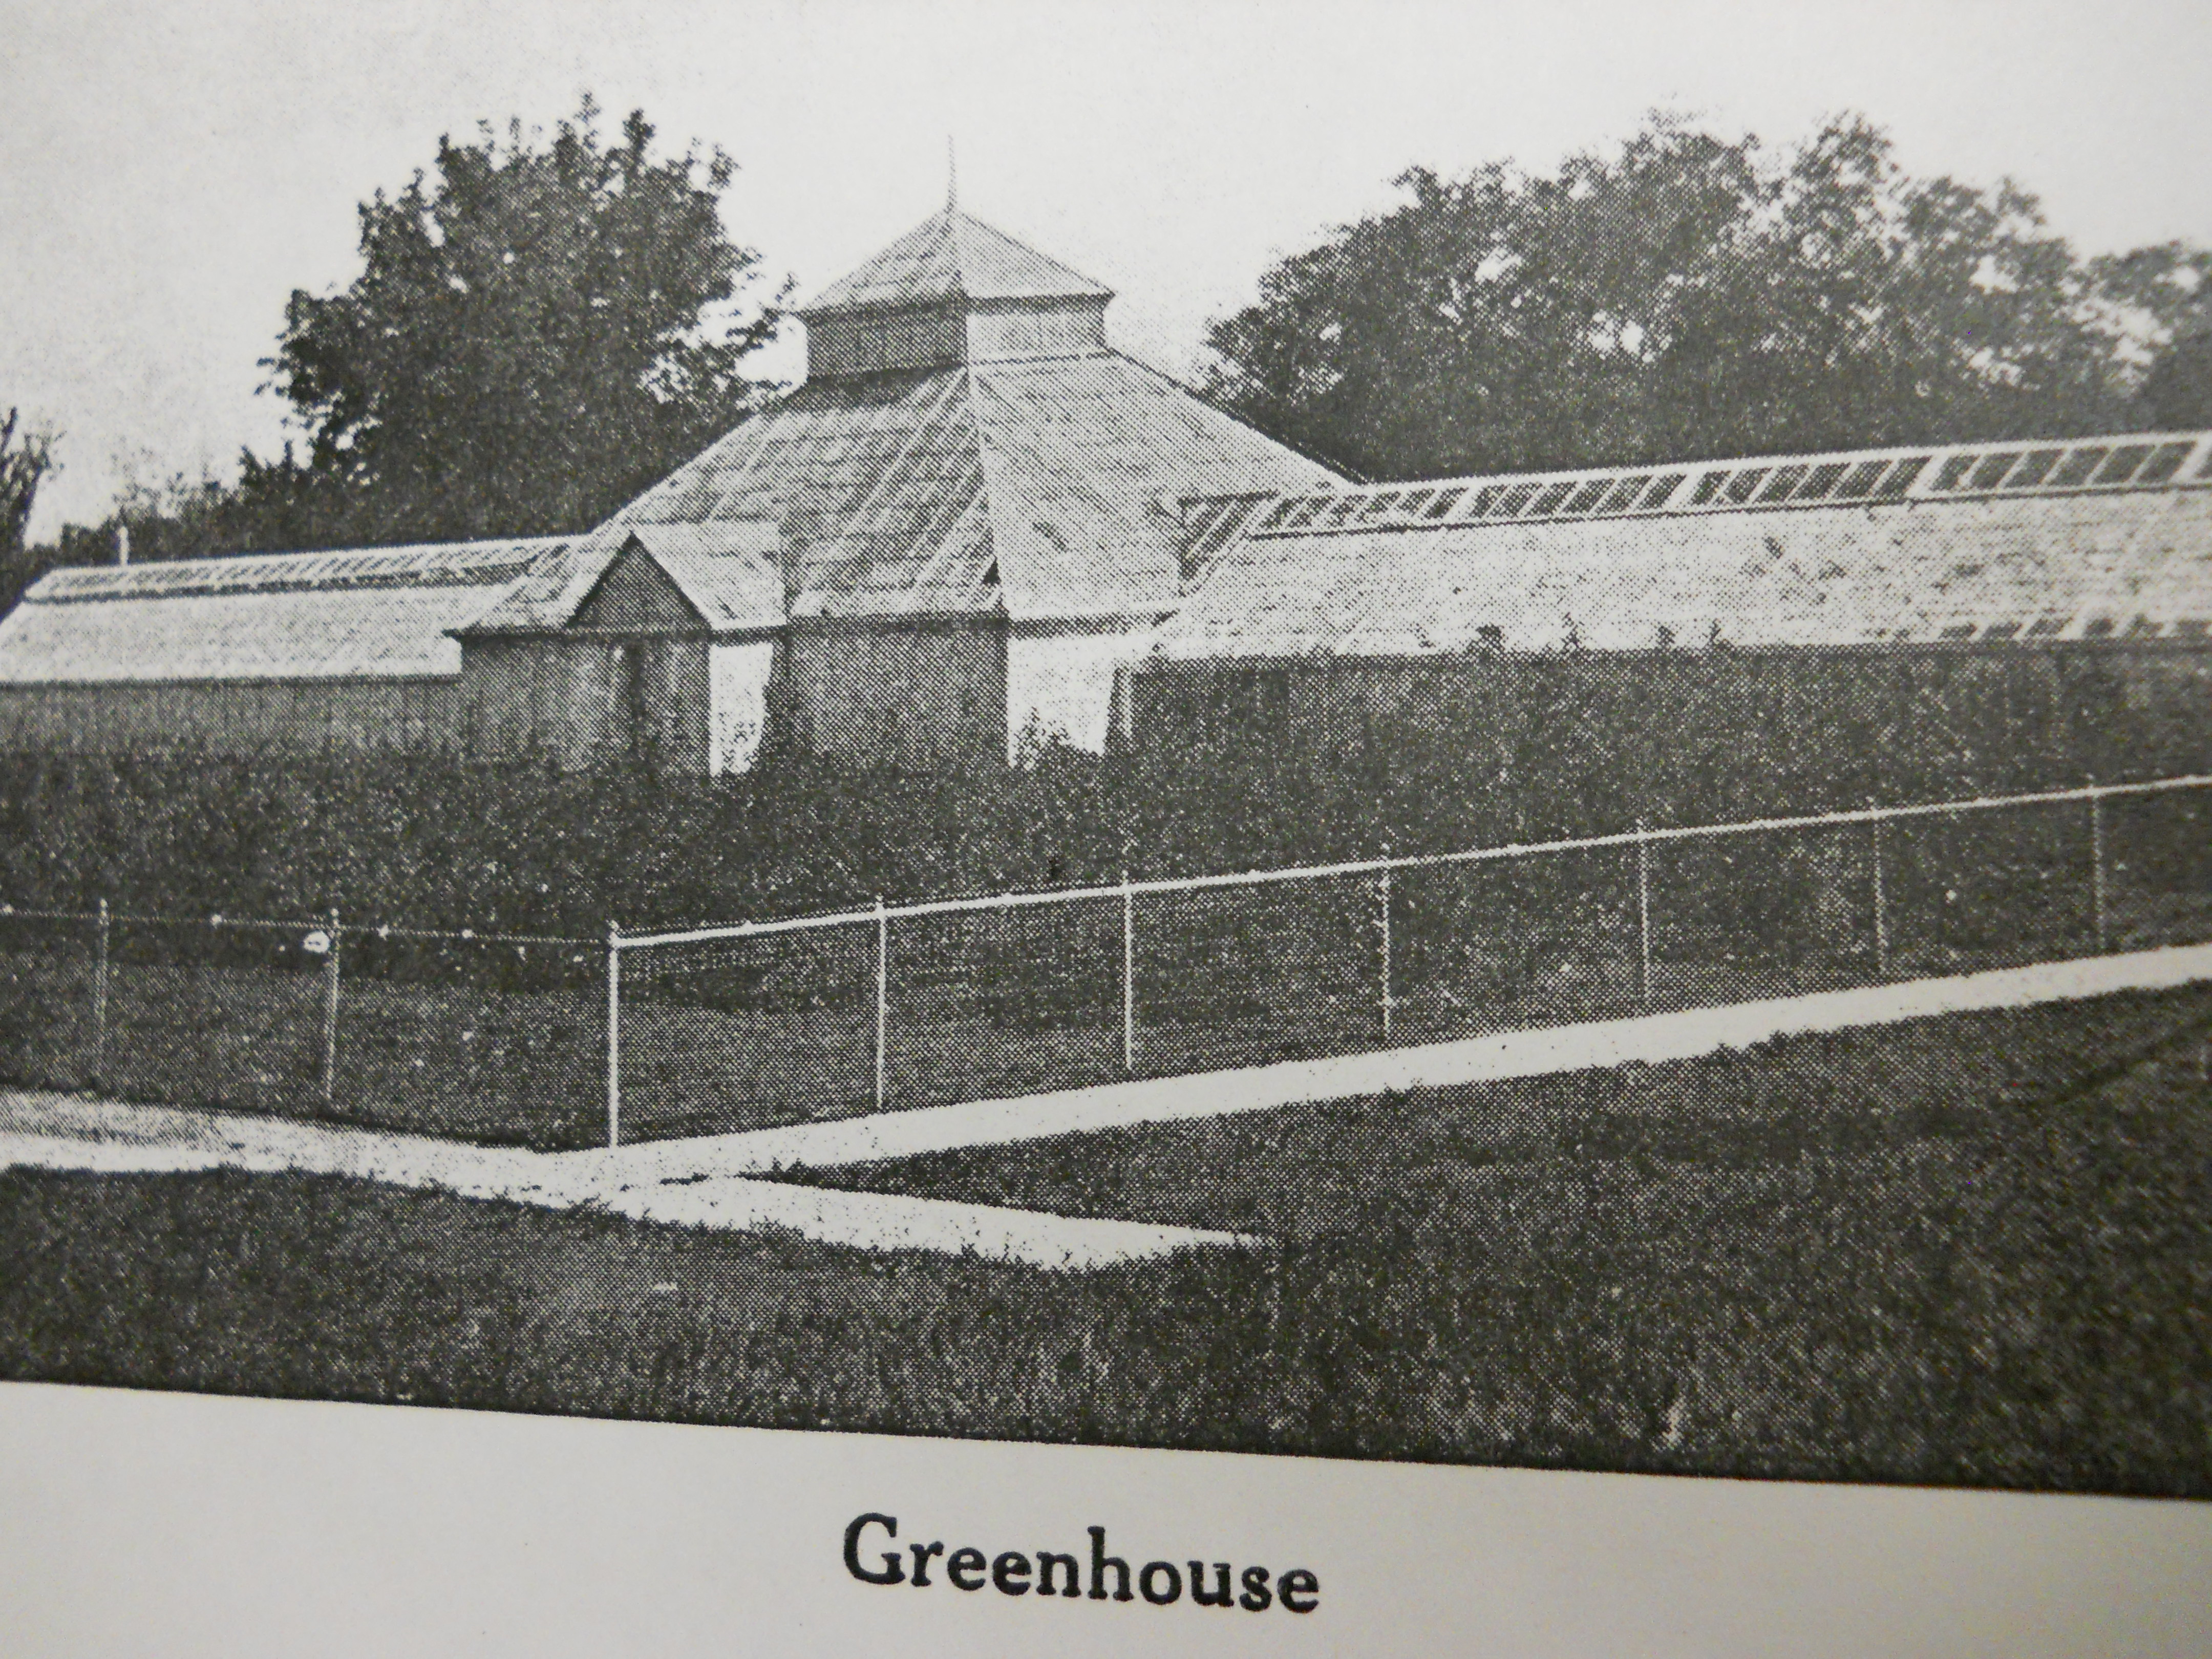 Greenhouse 1919.  Courtesy of Glenwood Public Library.